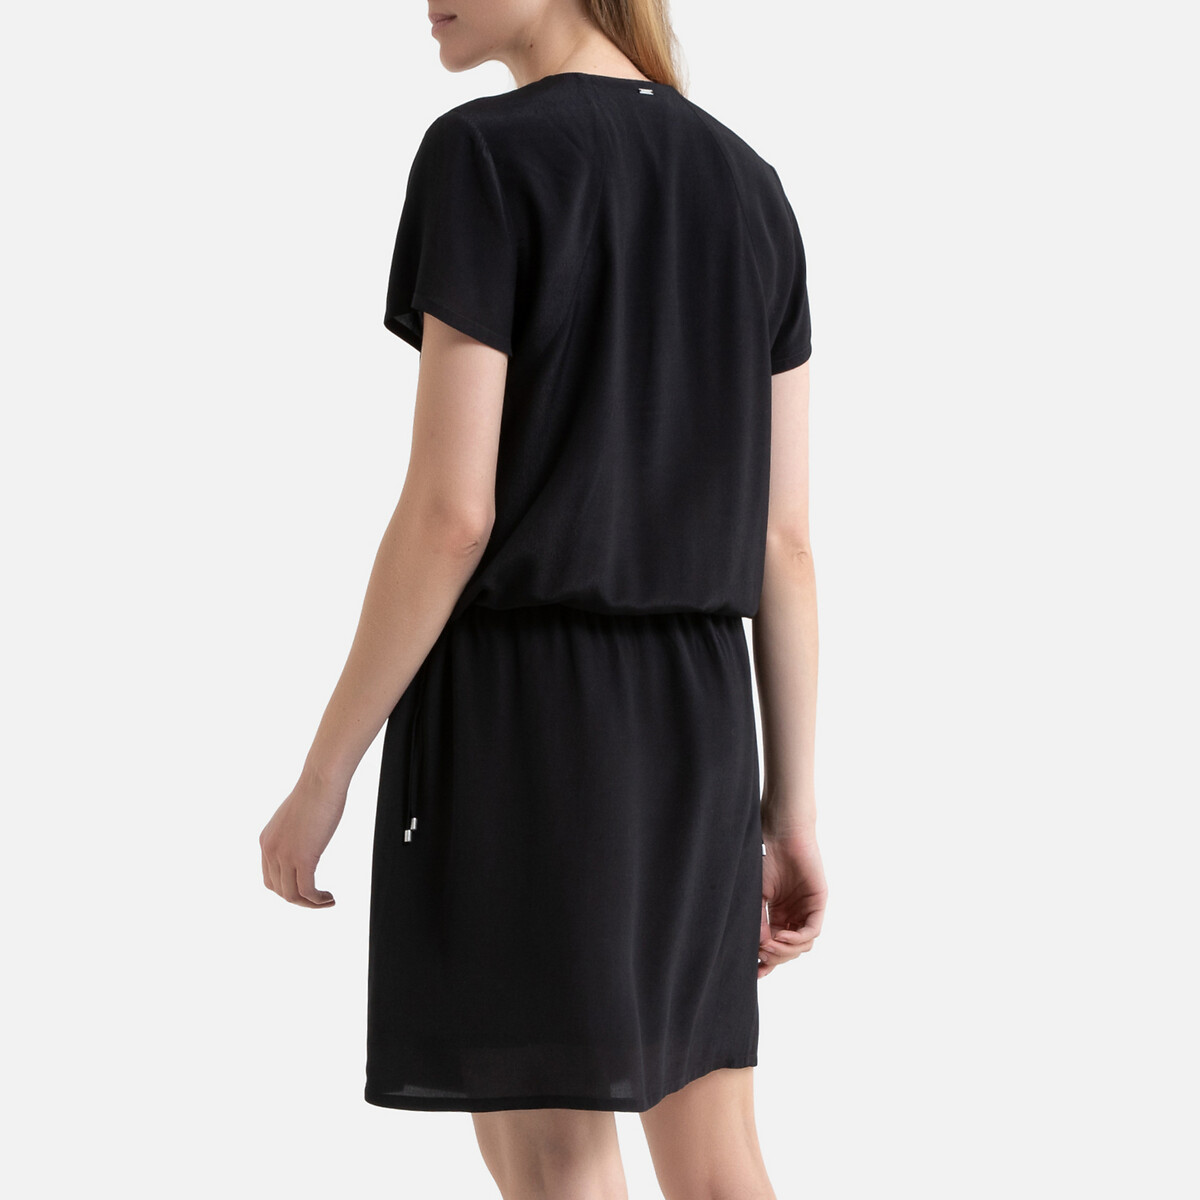 Платье La Redoute Расклешенное длина миди 34 40 (FR) - 46 (RUS) черный, размер 40 (FR) - 46 (RUS) Расклешенное длина миди 34 40 (FR) - 46 (RUS) черный - фото 3